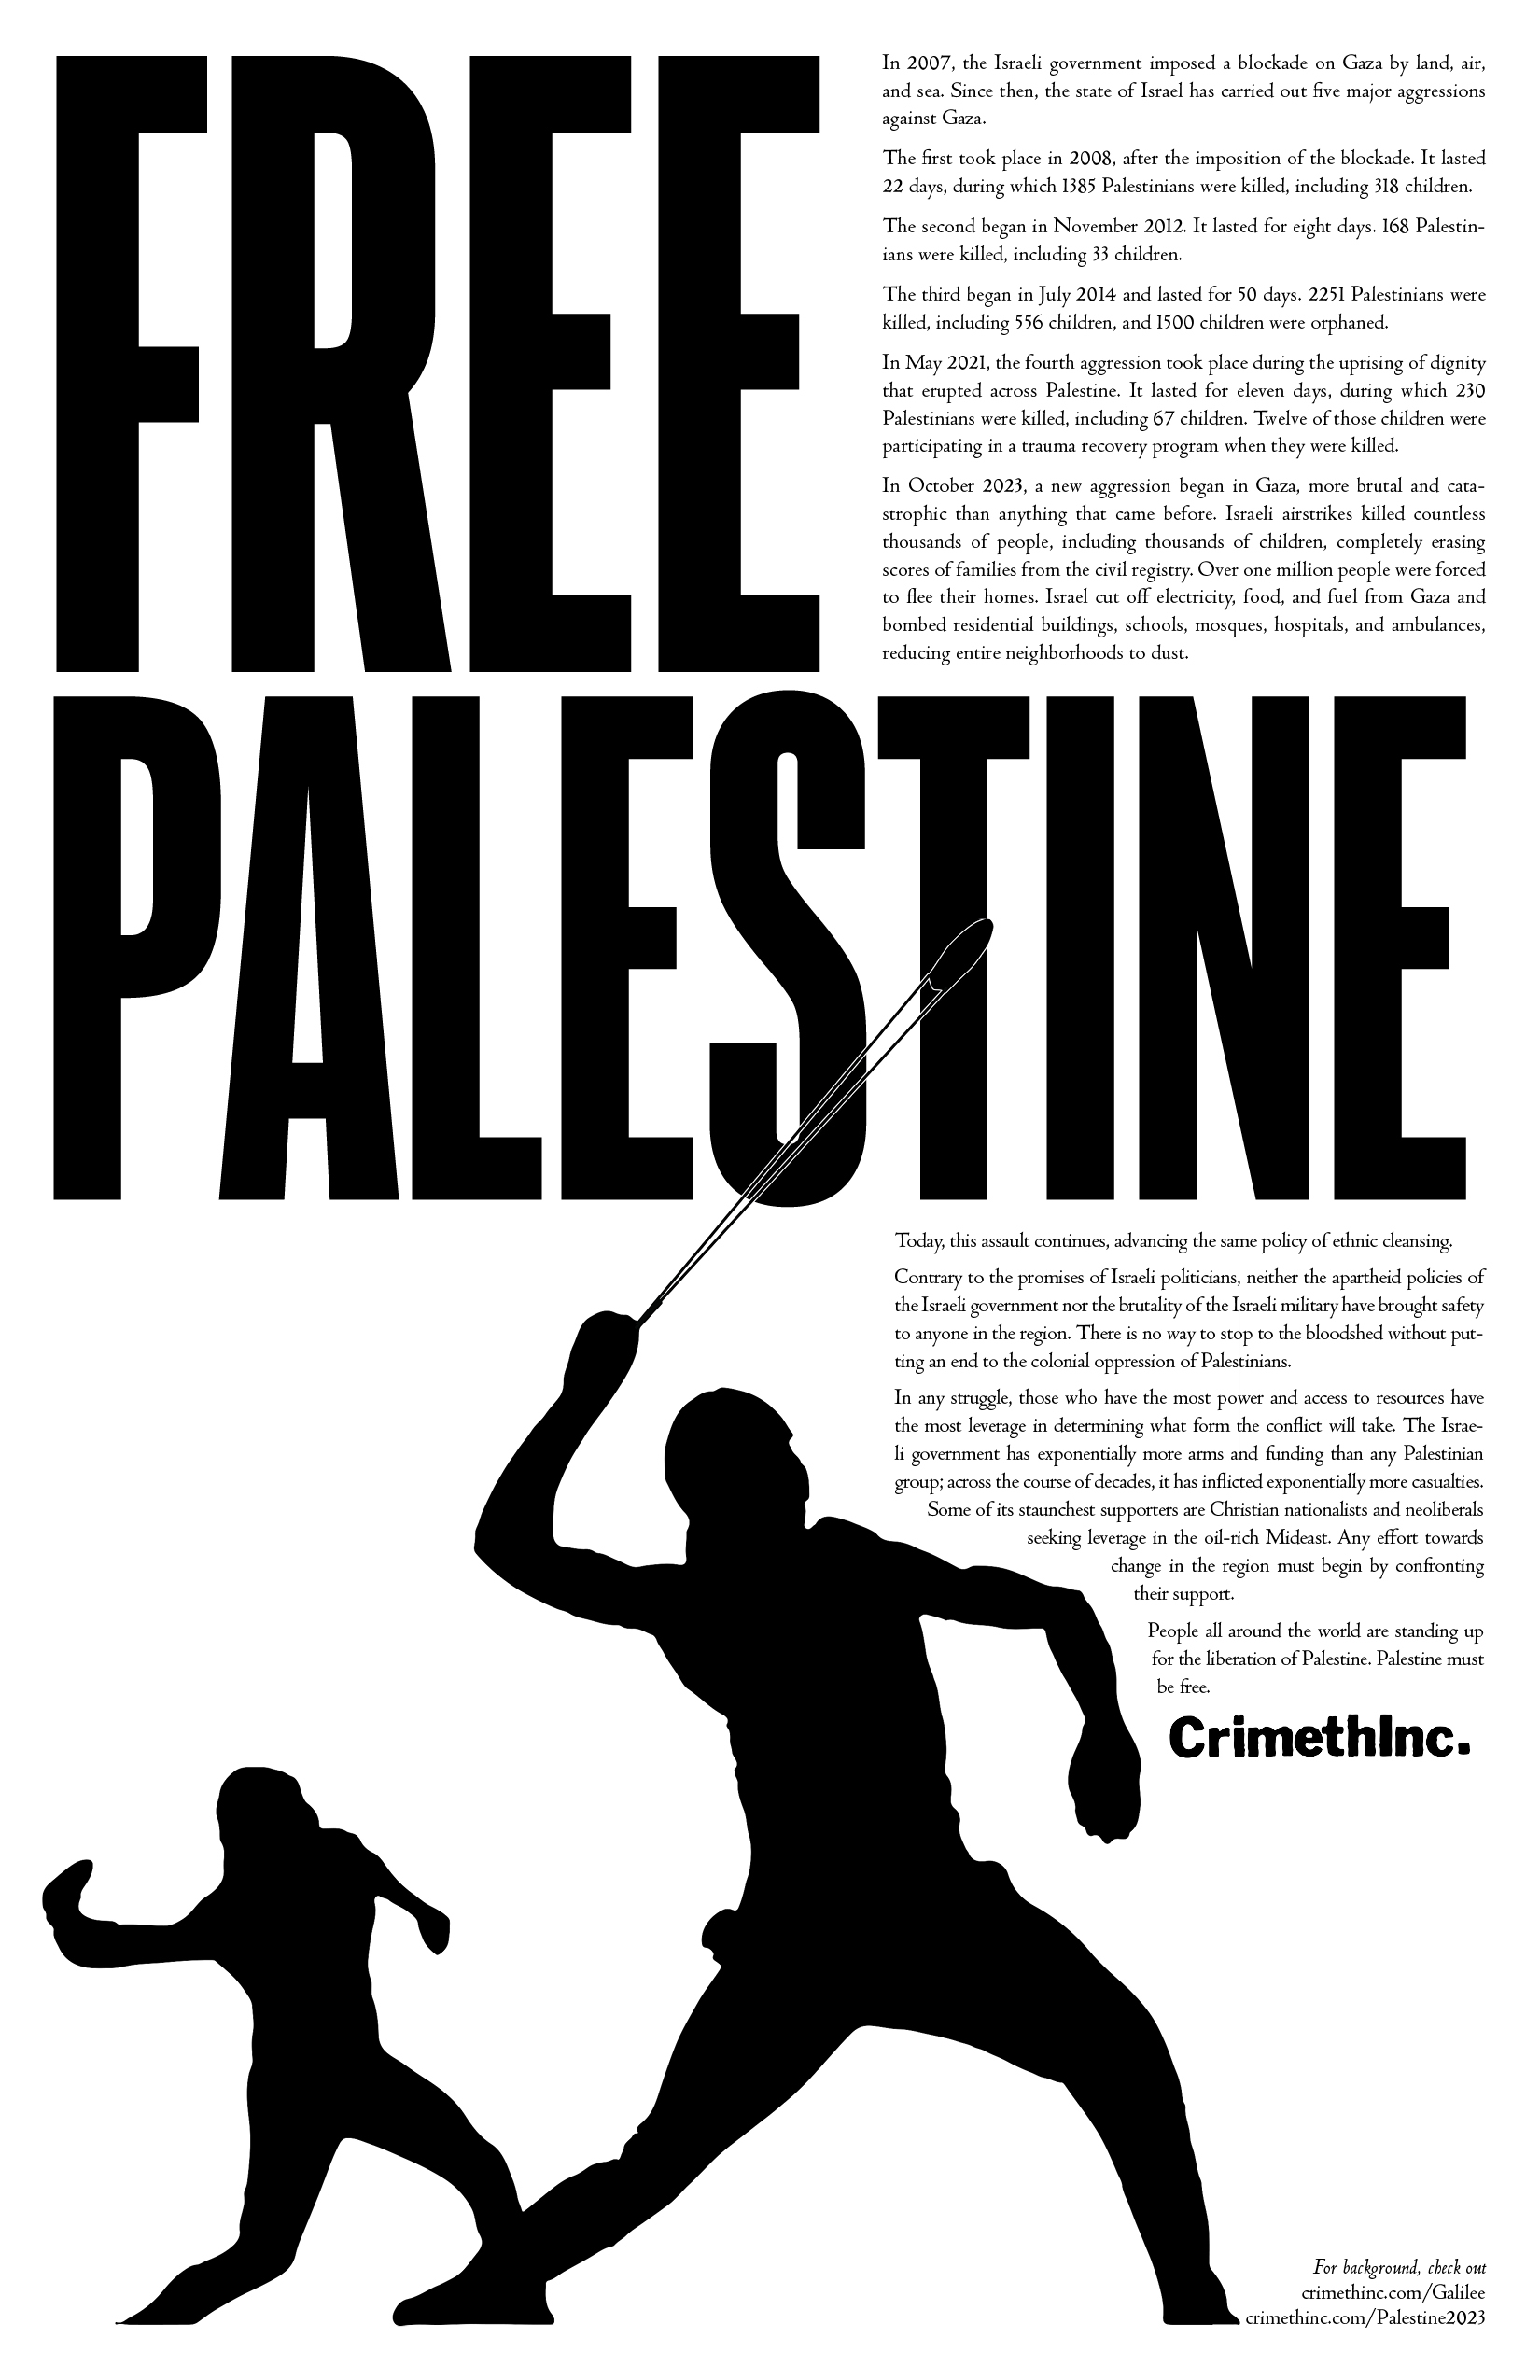 Foto di ‘Free Palestine’ fronte